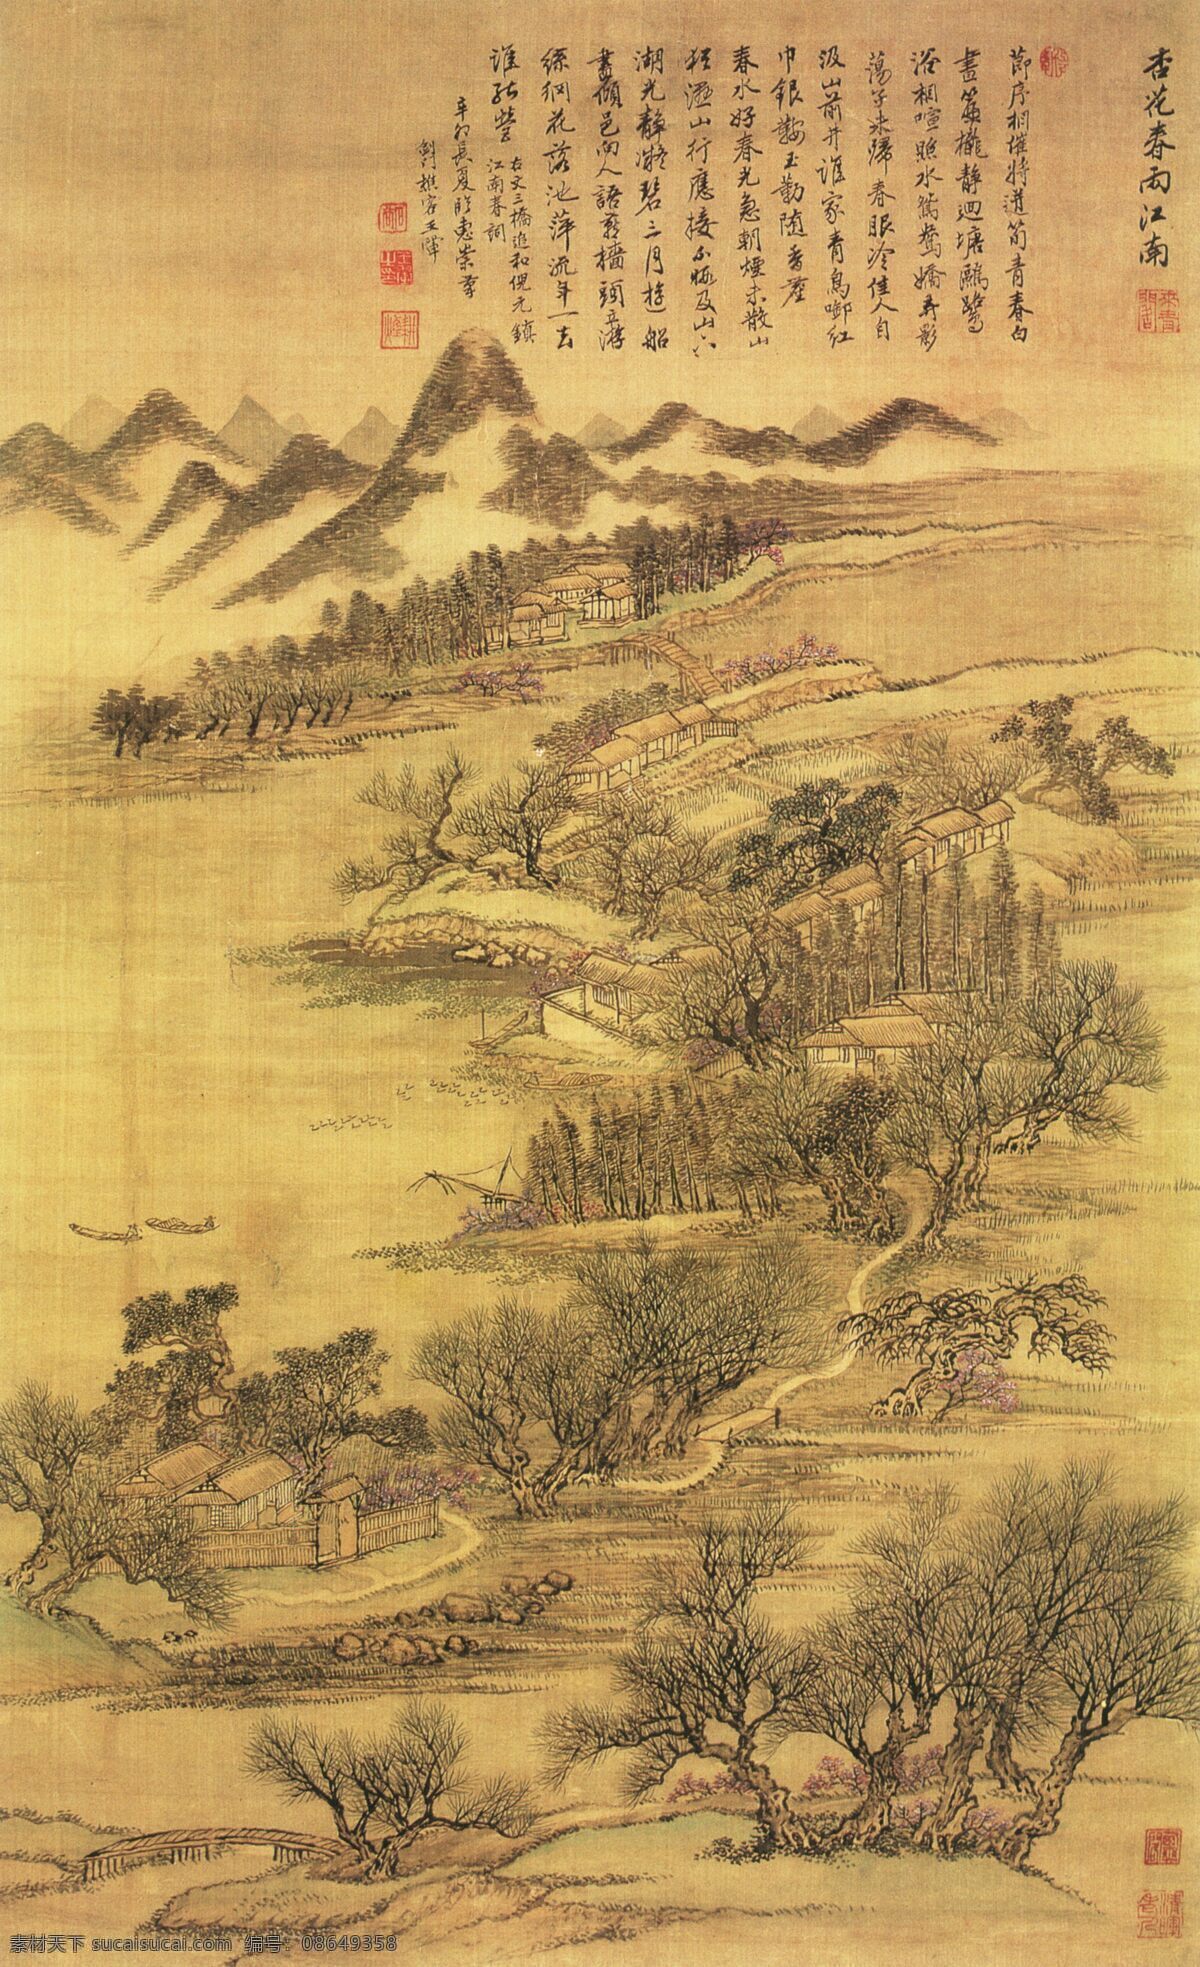 仿古 四季 山水 图 之一 中国 名画 黄色